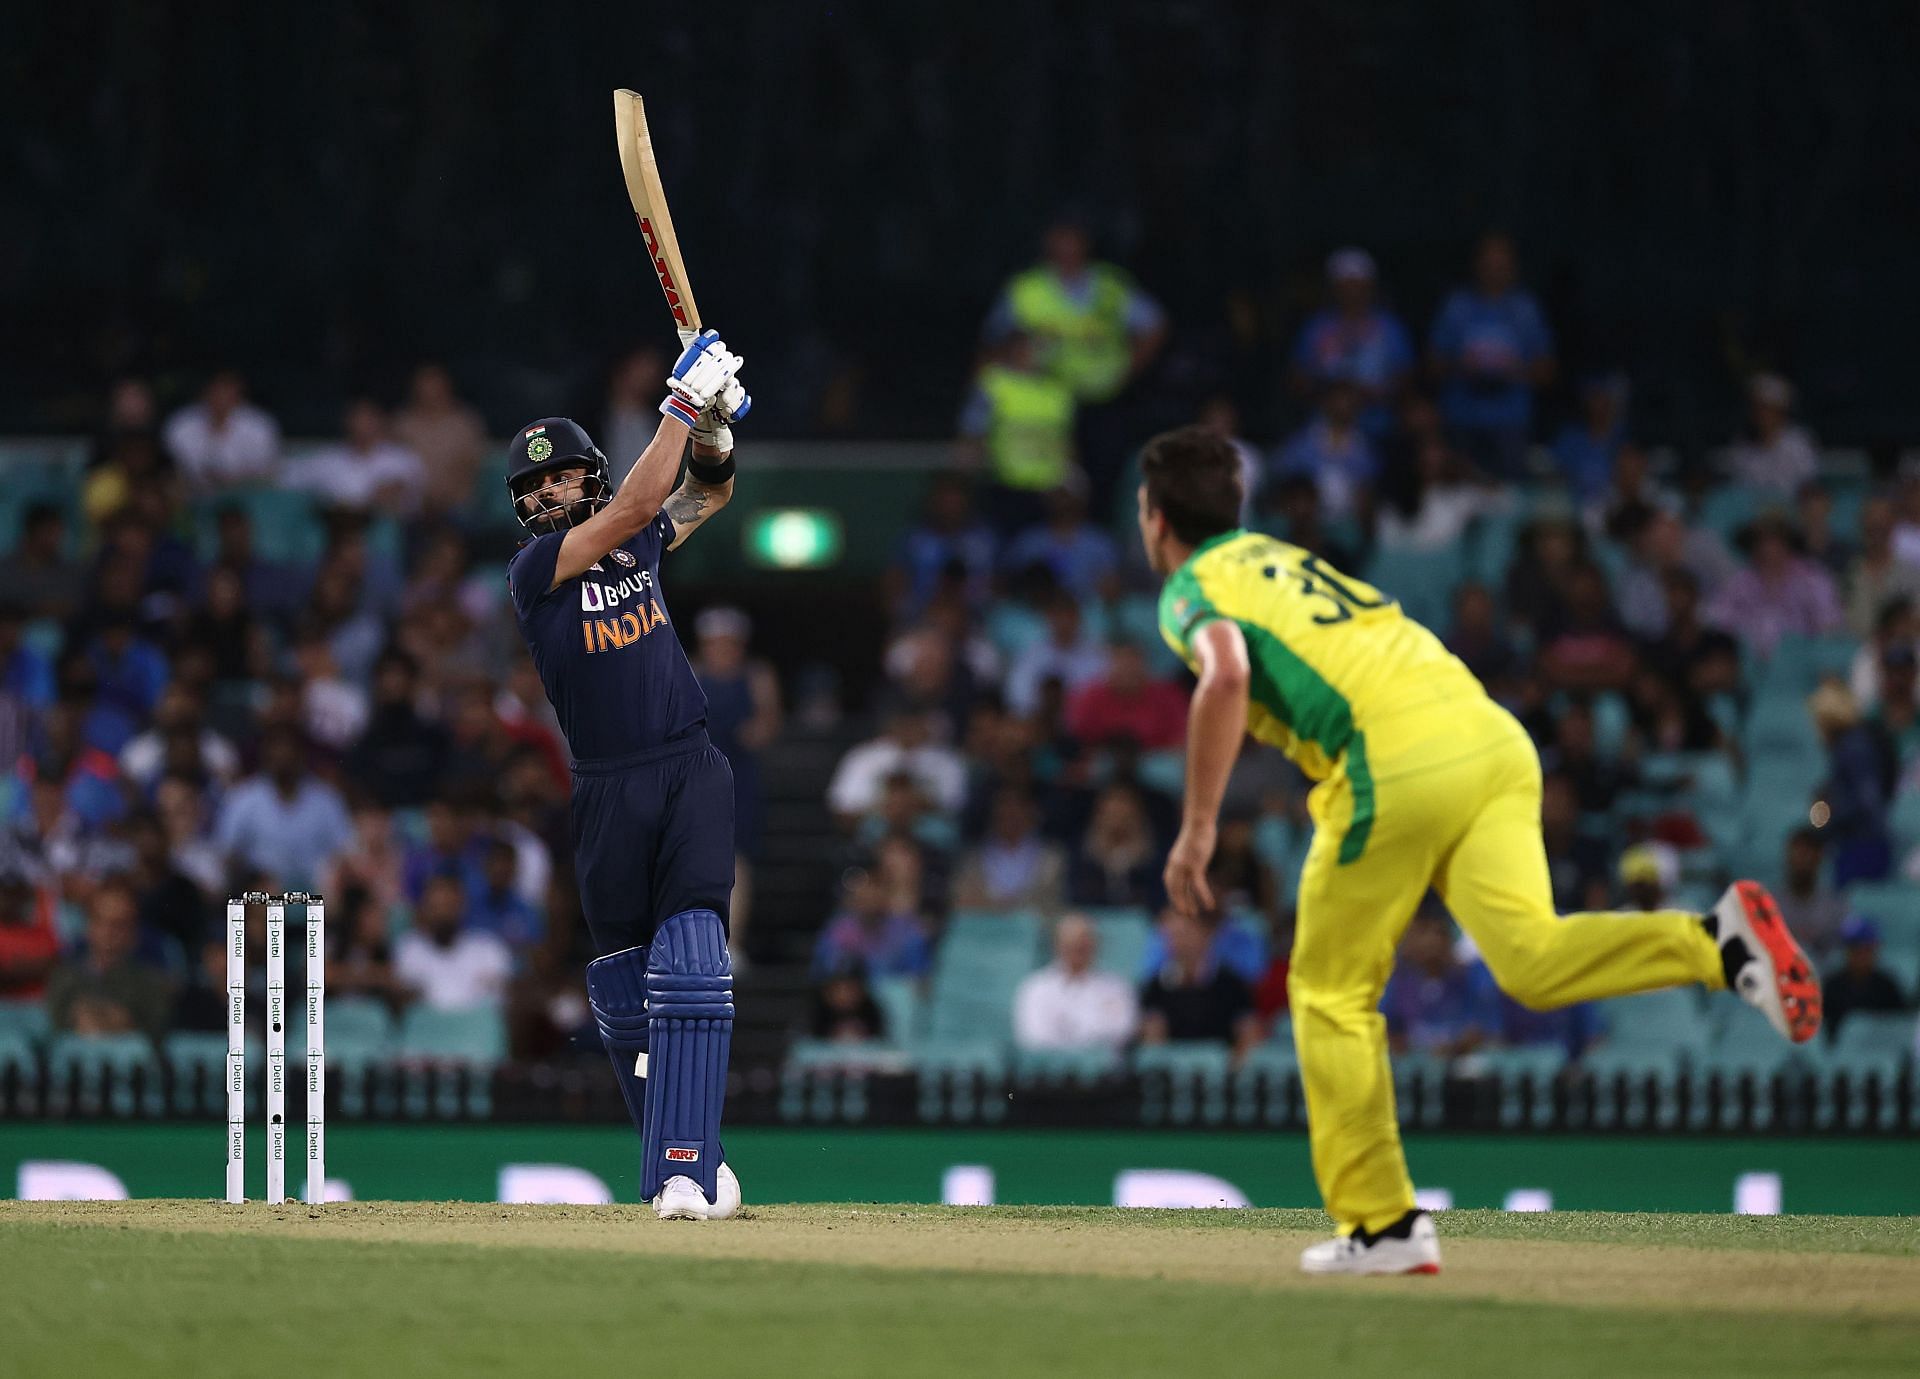 Australia v India - ODI Game 1